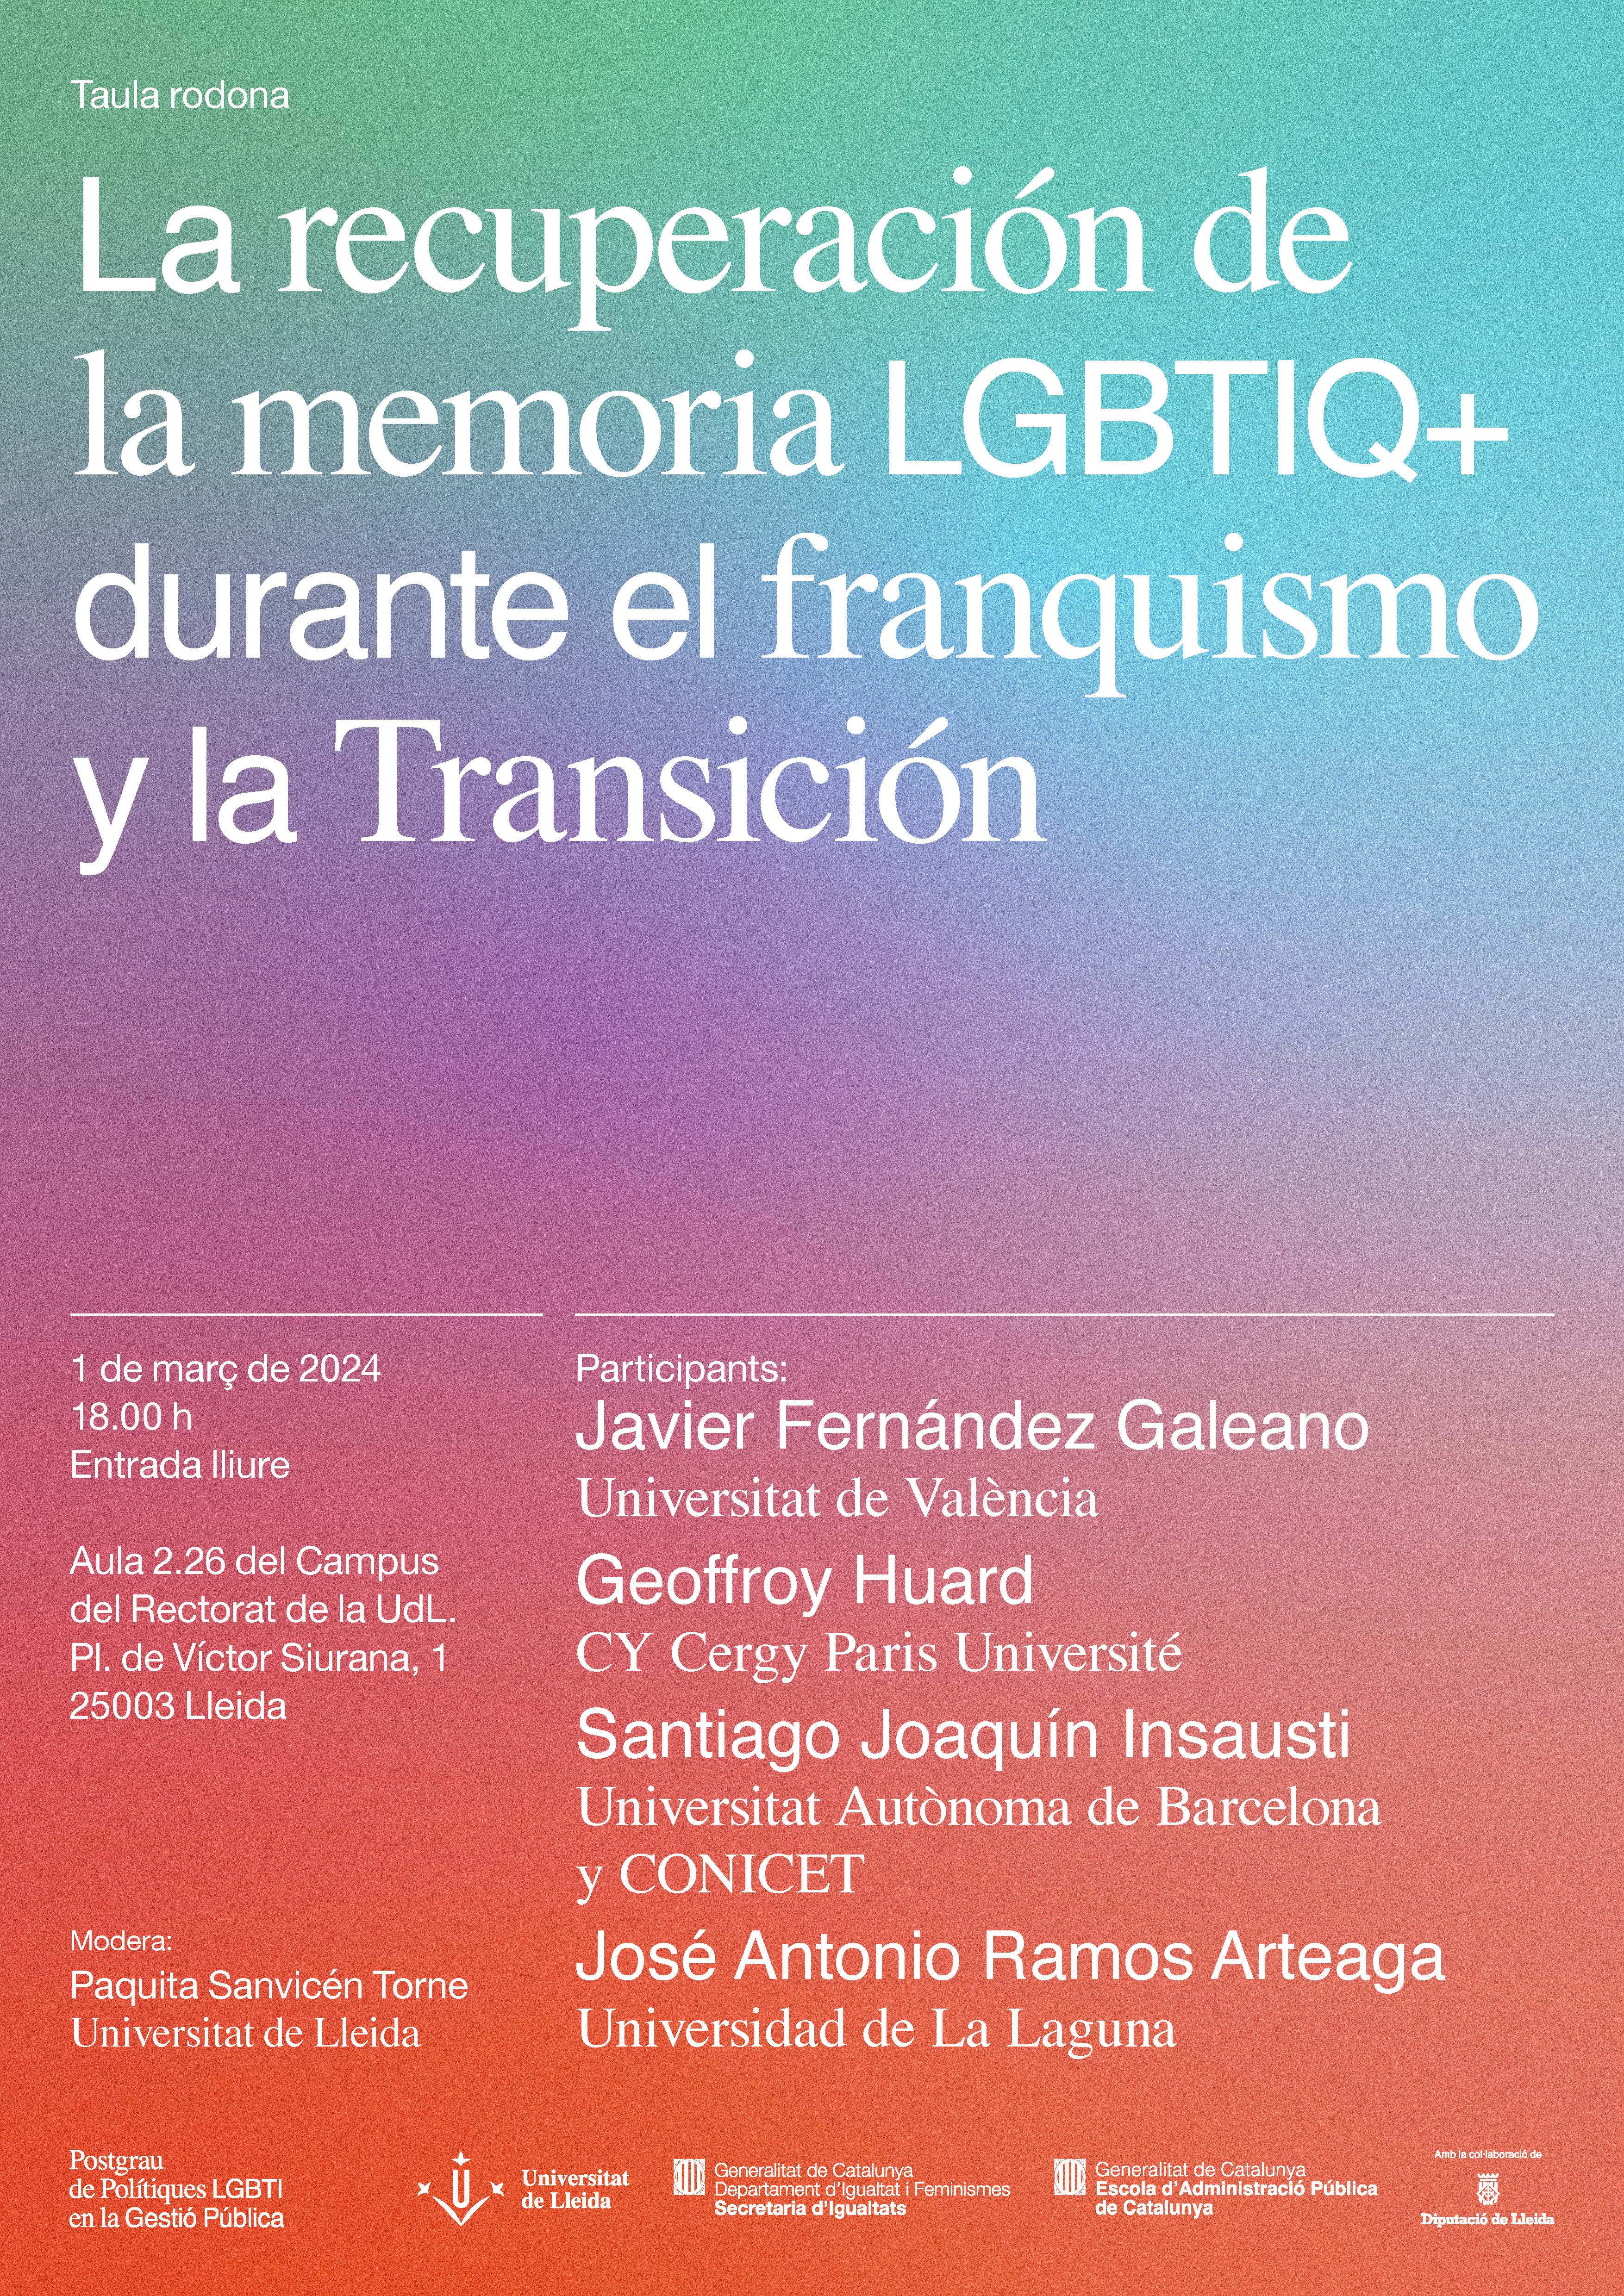 Taula redona: La recuperación de la memoria LGBTIQ+ durante el franquismo y la Transición